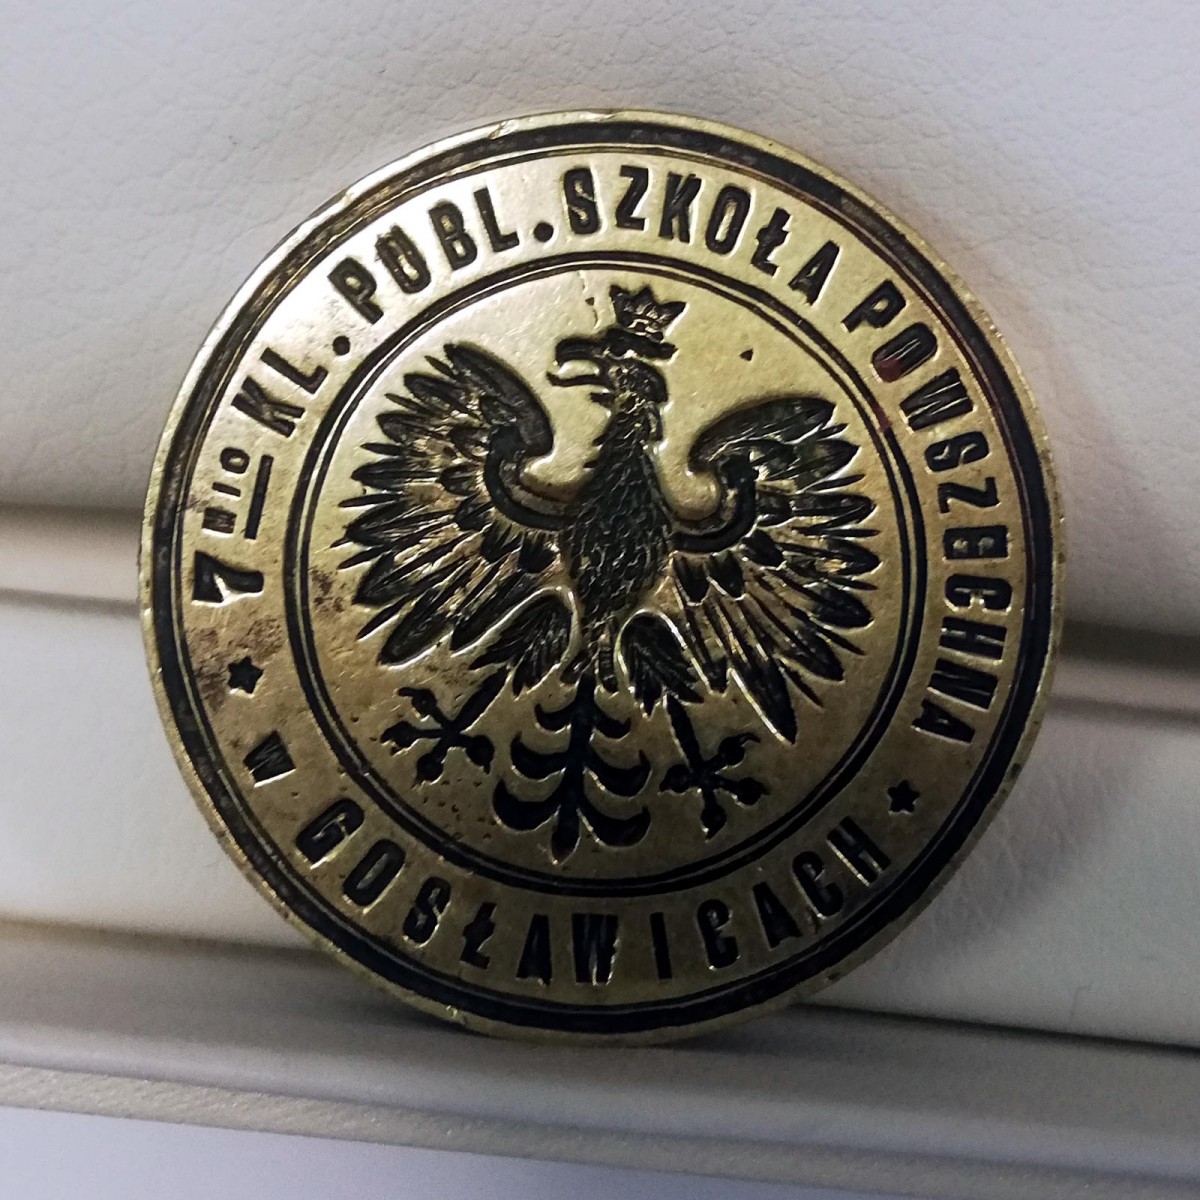 Przedwojenna pieczęć wróciła do szkoły w Gosławicach po ponad 80 latach